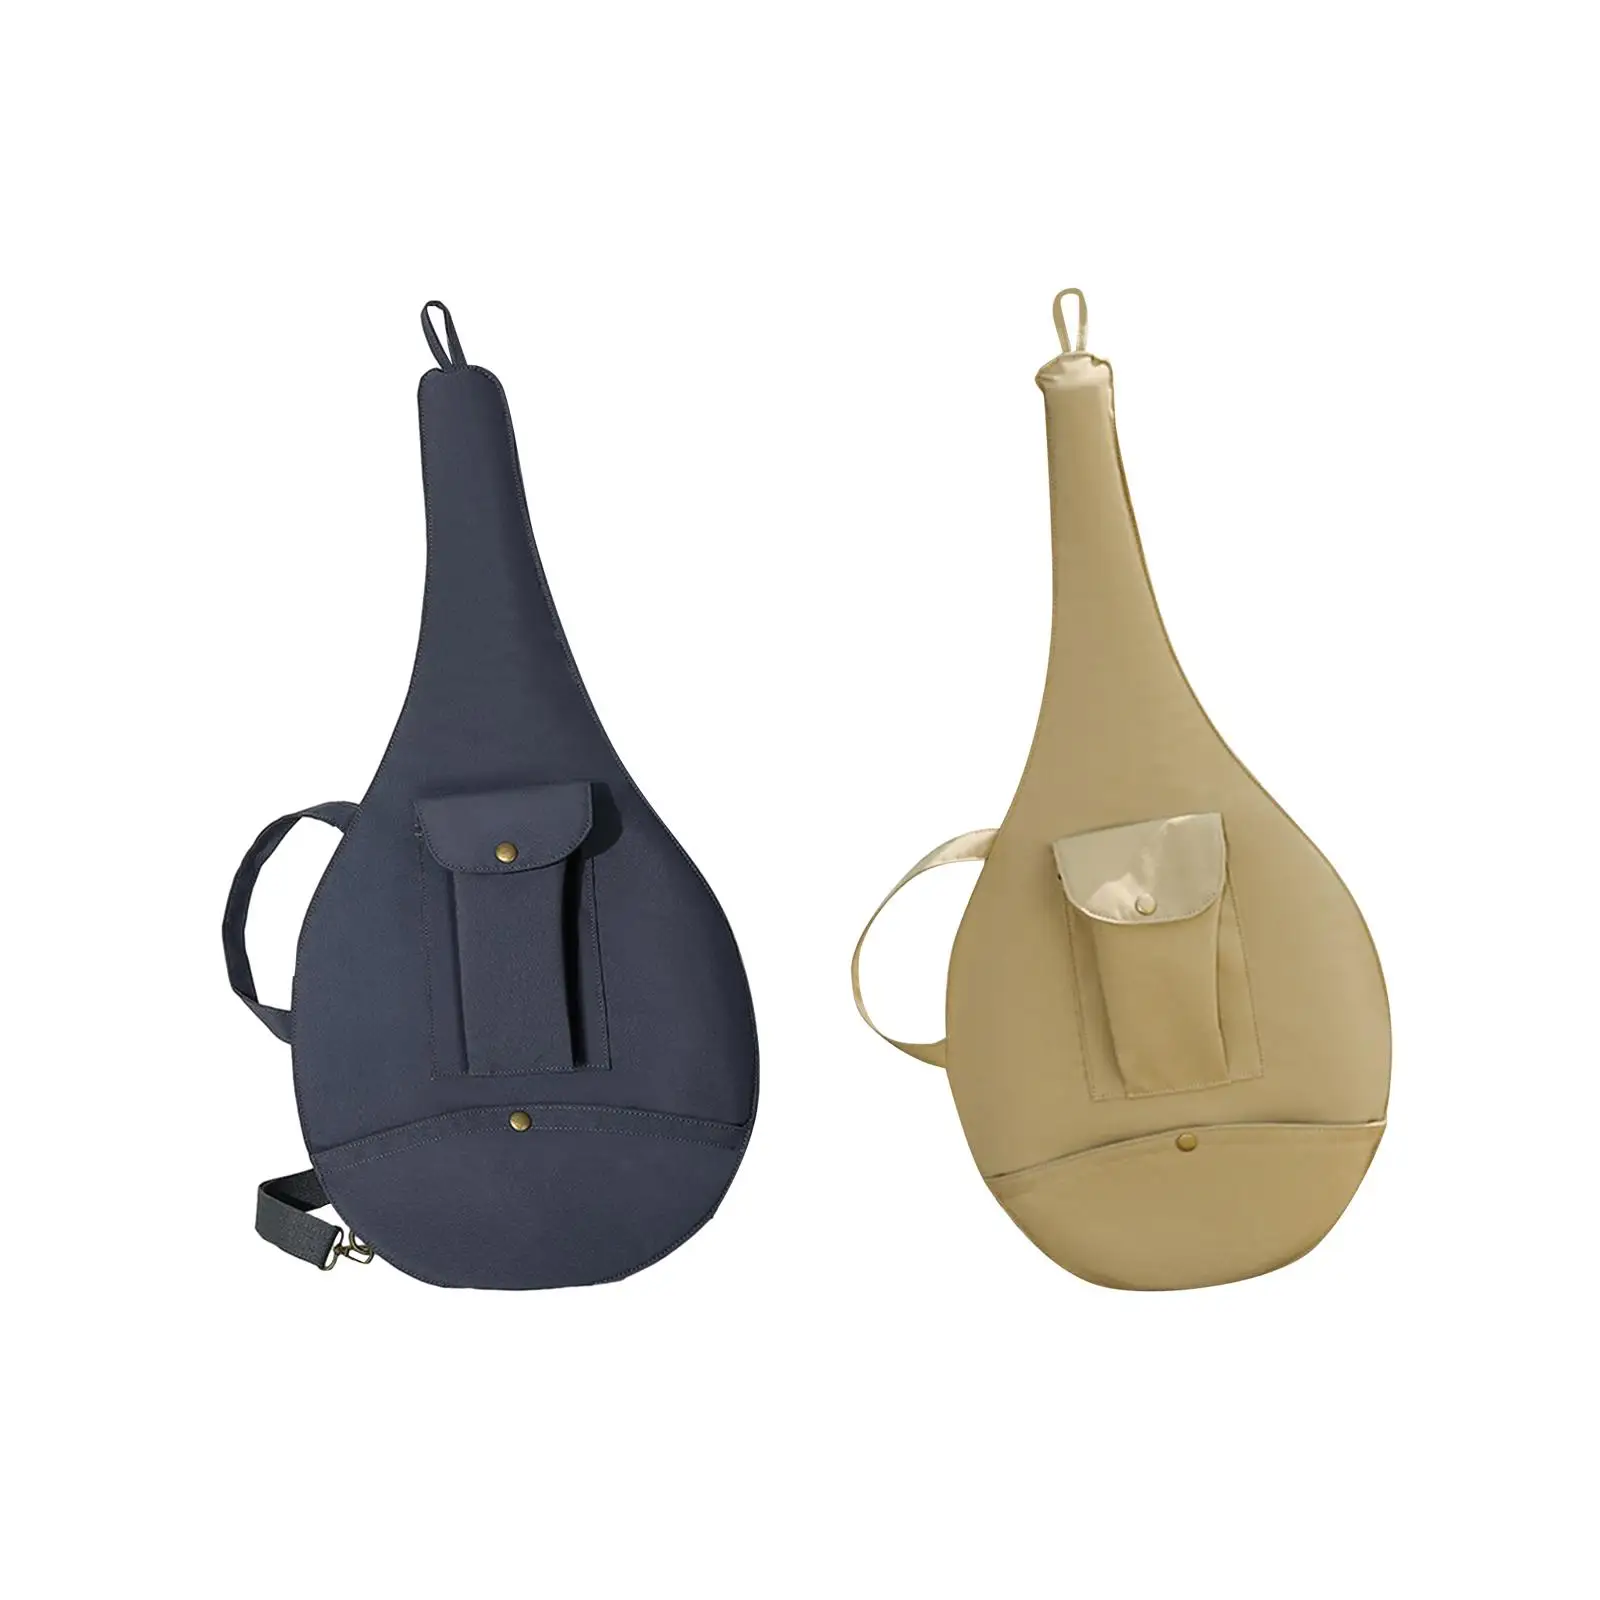 Tennis Racket Bag Waterproof with Storage Pocket Women Men Versatile Outdoor Sports Accessories Handbag Adjustable Shoulder Bag